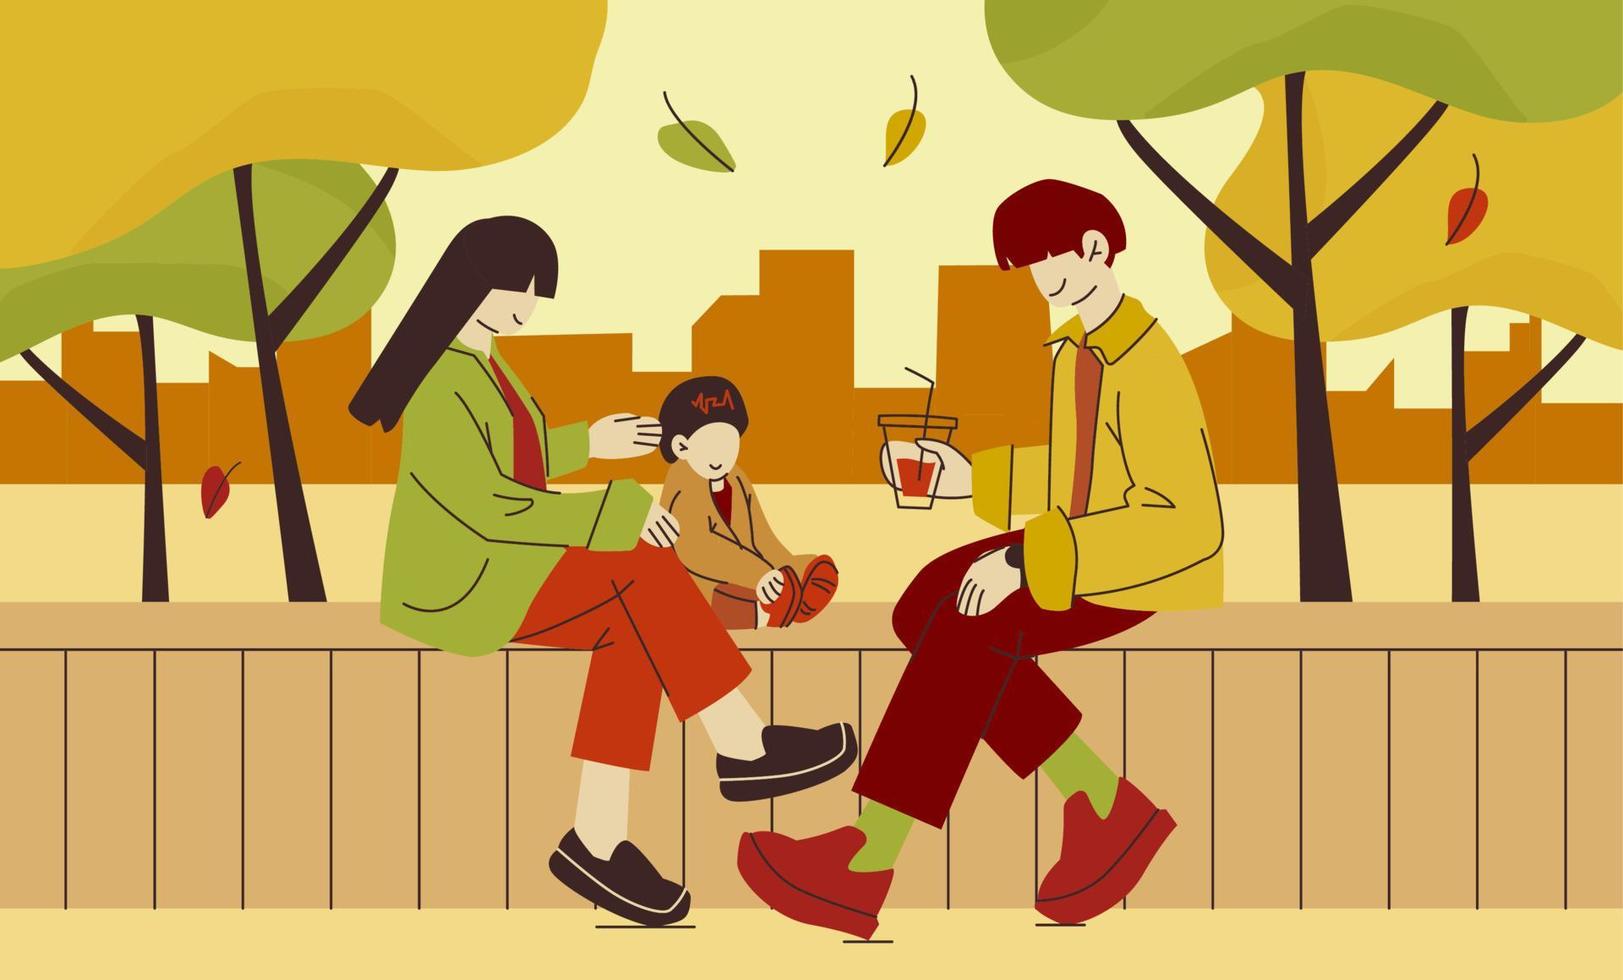 la familia se sienta en un banco bajo los árboles en otoño. hombre, mujer y niño afuera pasando tiempo juntos. ilustración colorida del vector plano moderno.